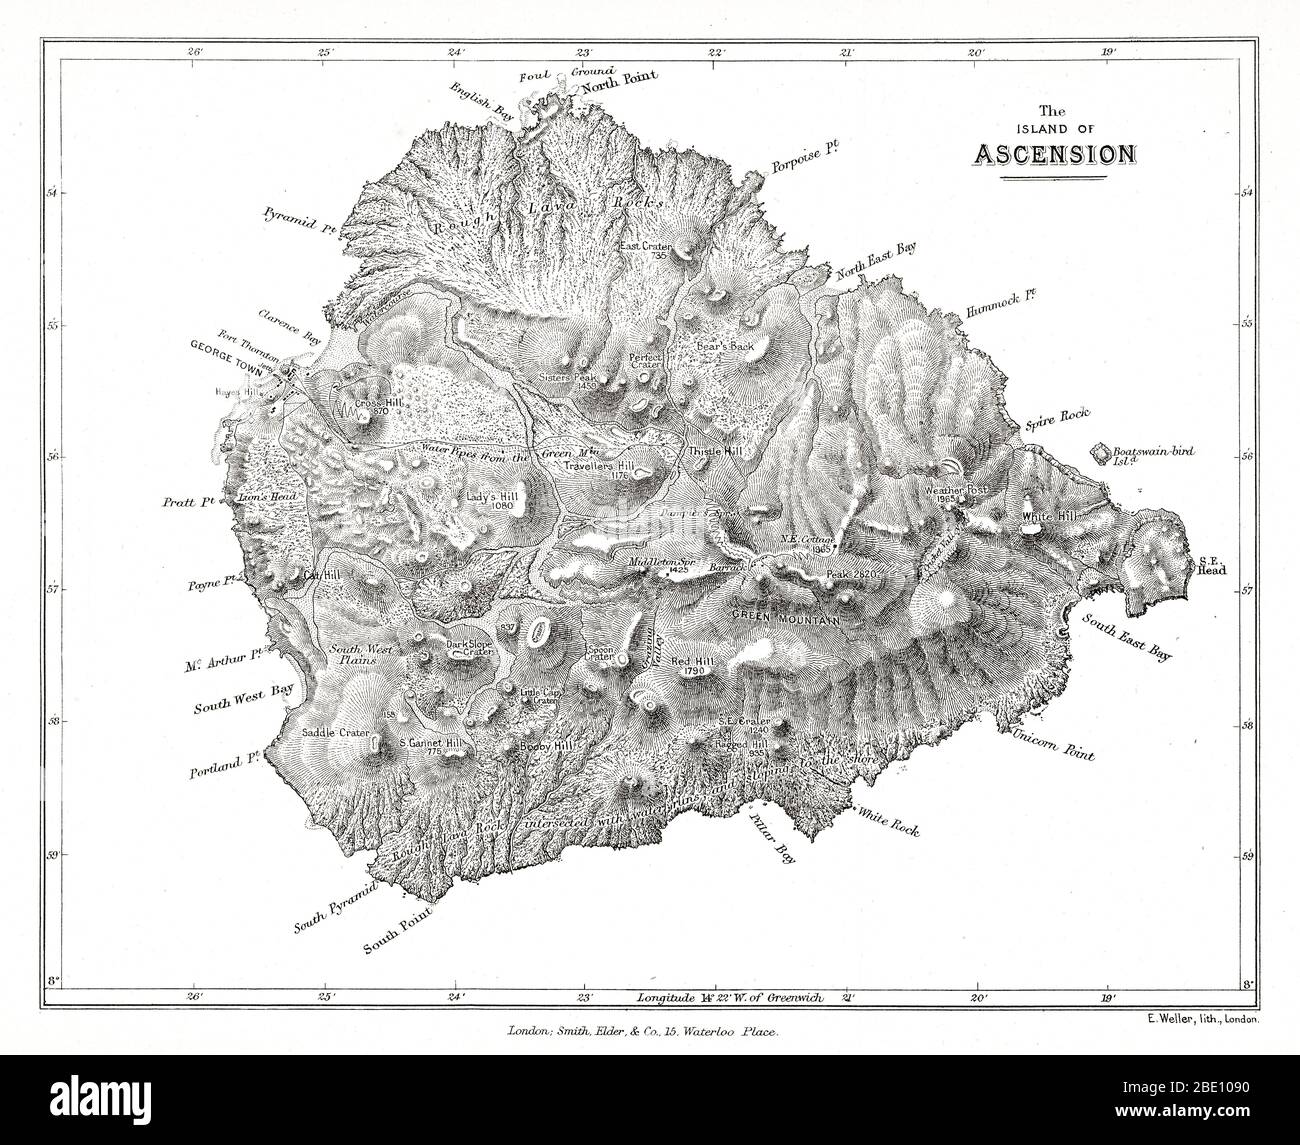 Mappa dell'isola di Ascensione dalle osservazioni geologiche di Charles Darwin sulle isole vulcaniche e parti del Sud America visitate durante il viaggio di H.M.S. "Beagle". edizione 2d. Londra: Smith Elder and Co., 1876. Ascension Island è un'isola vulcanica isolata nelle acque equatoriali dell'Oceano Atlantico del Sud, a circa 1,600 chilometri (1,000 miglia) dalla costa dell'Africa e a 2,250 chilometri (1,400 miglia) dalla costa del Sud America, che è all'incirca a metà strada tra il corno del Sud America e l'Africa. Foto Stock